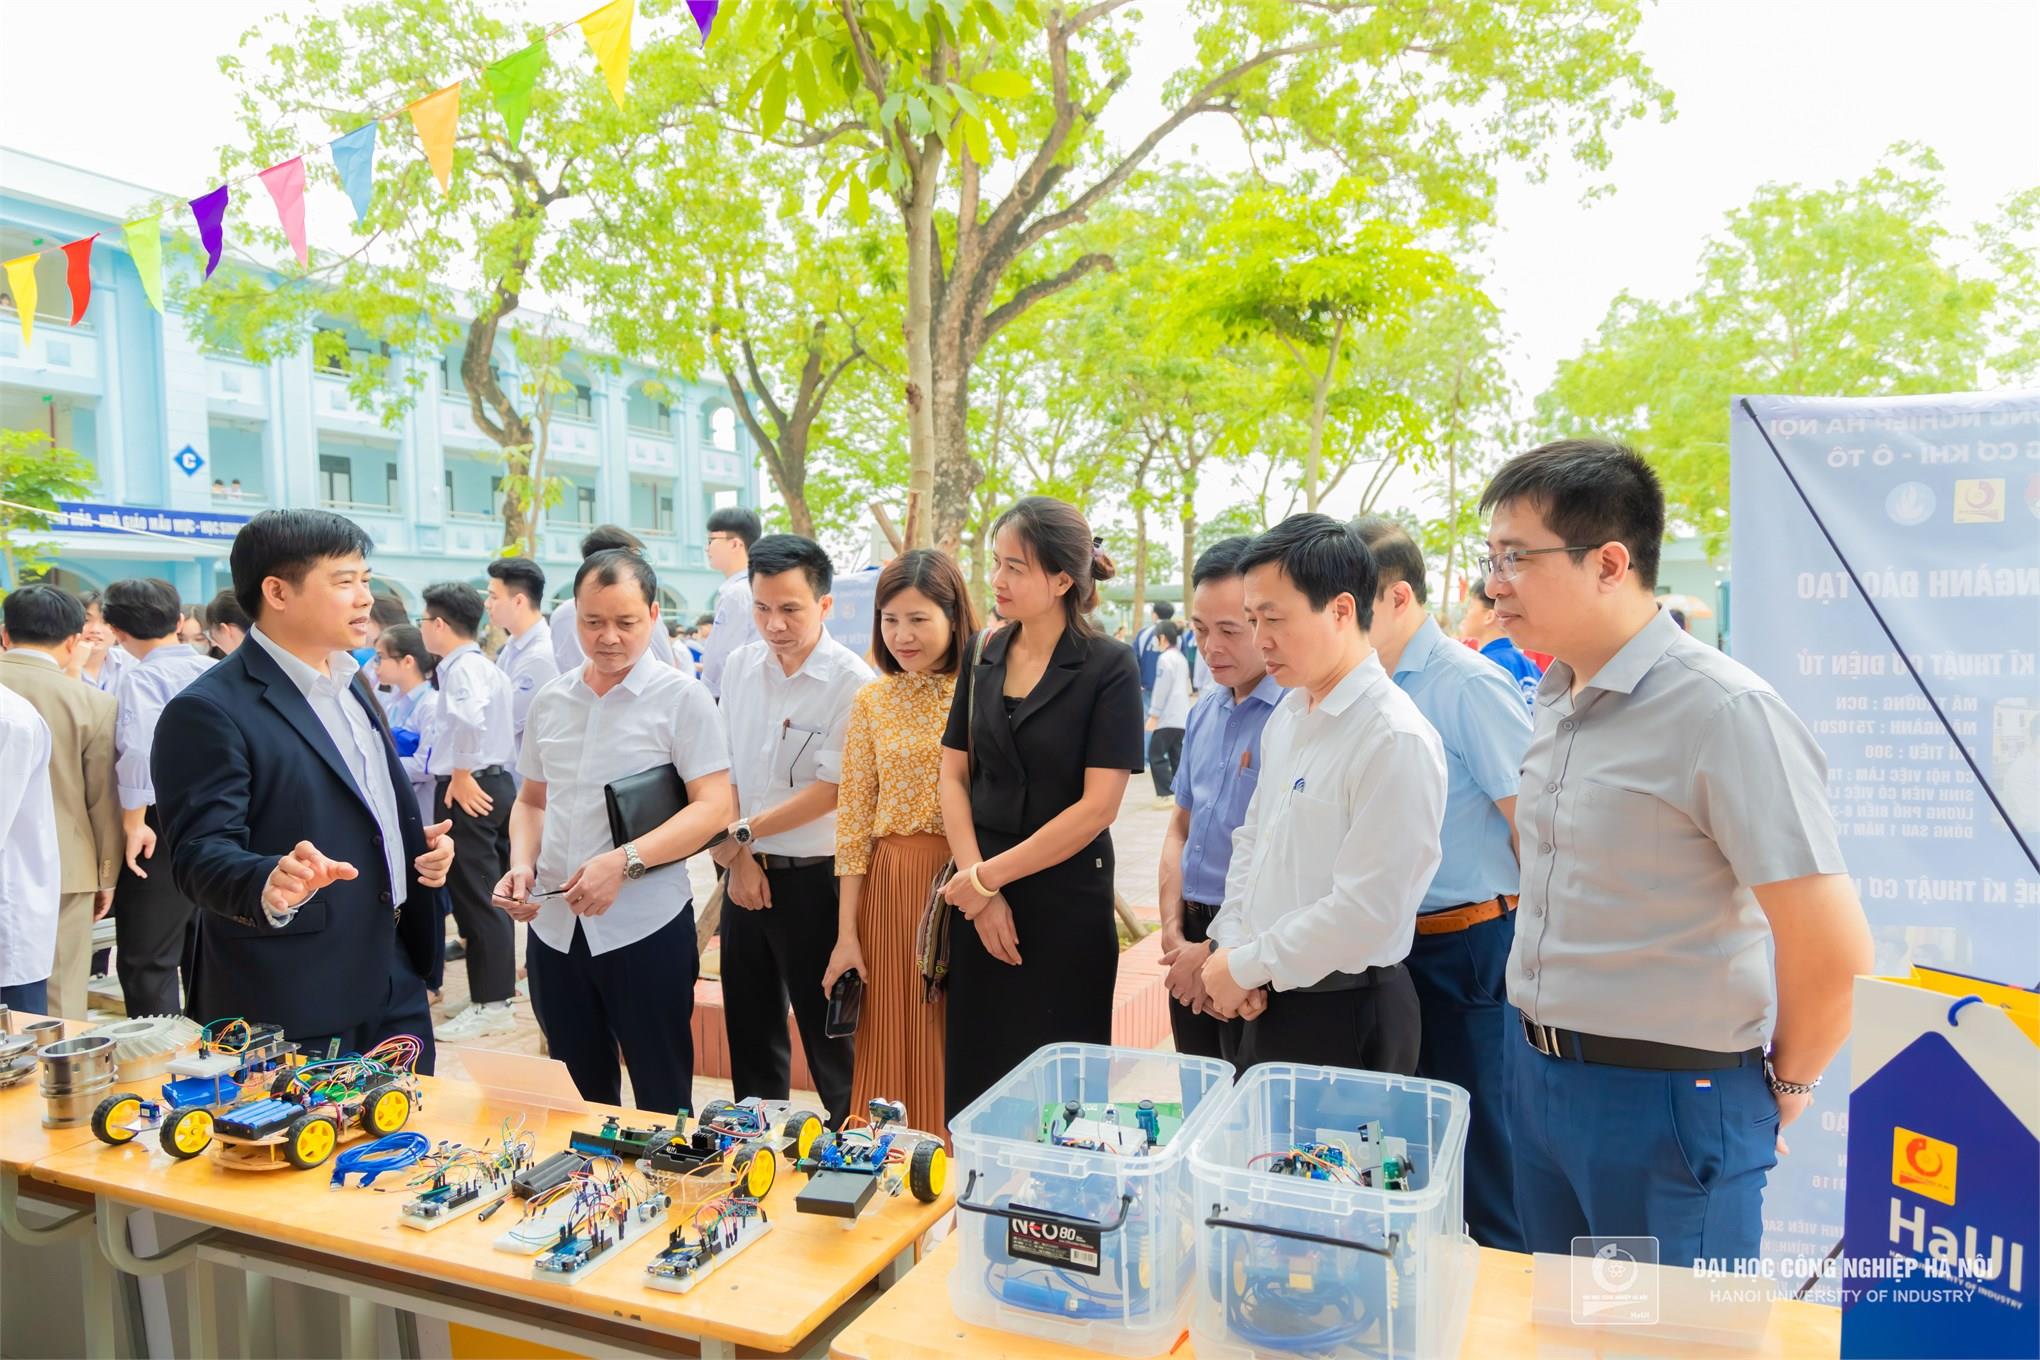 [tienphong] Trường Cơ khí - Ô tô, Đại học Công nghiệp Hà Nội ươm mầm tài năng khoa học công nghệ từ giáo dục STEM